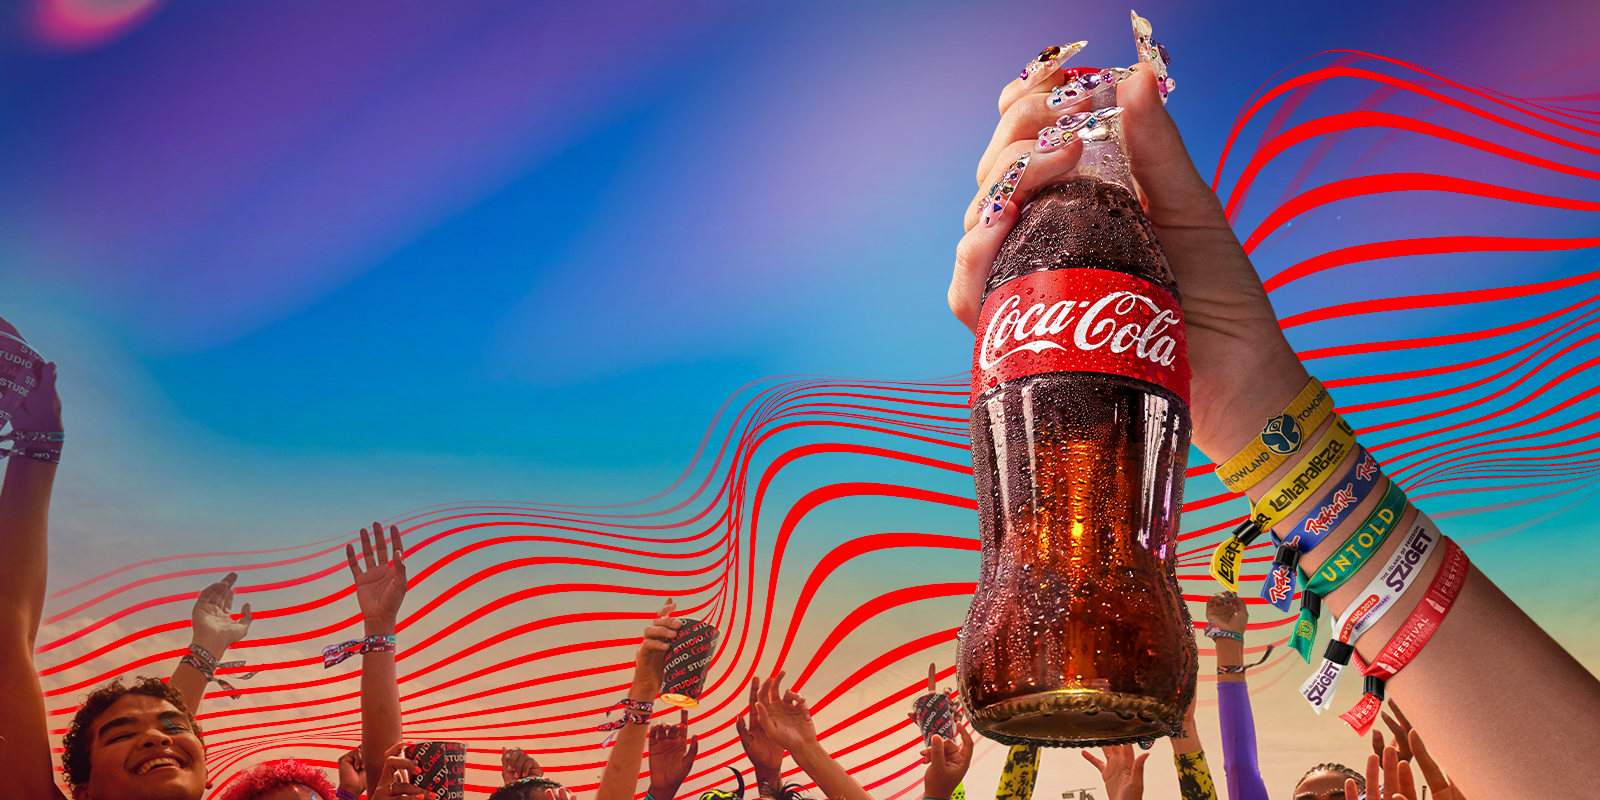 coca-cola zero sugar bottle and festivals wristbands